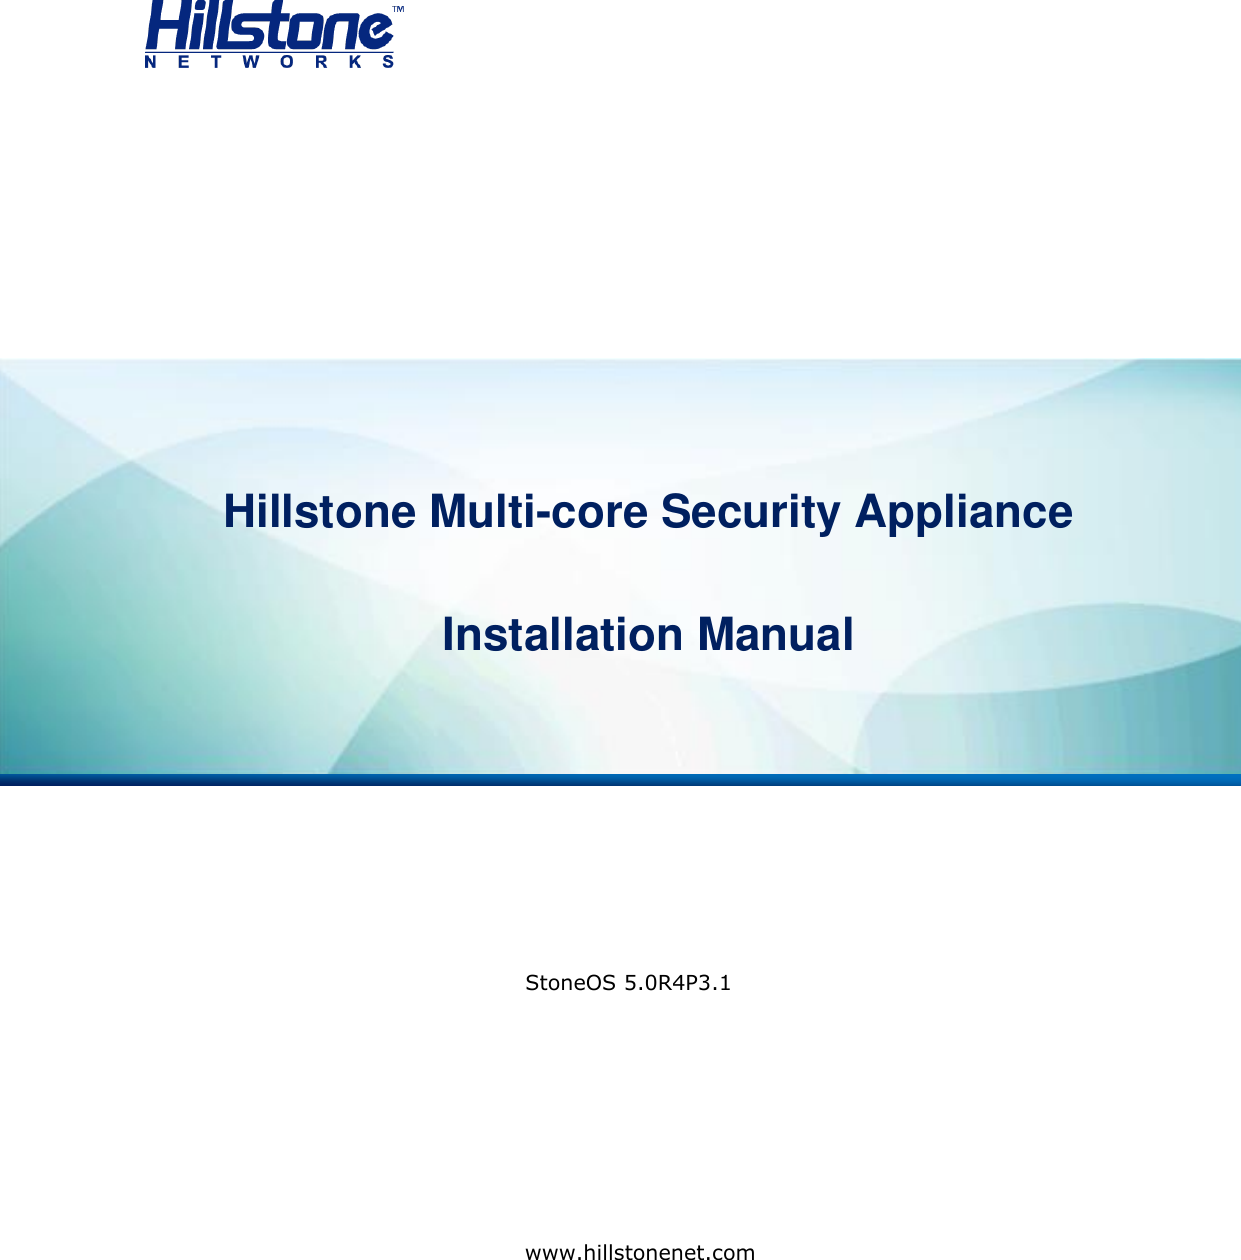                           Hillstone StoneOS User Manual     Hillstone Multi-core Security Appliance  Installation Manual   StoneOS 5.0R4P3.1     www.hillstonenet.com 